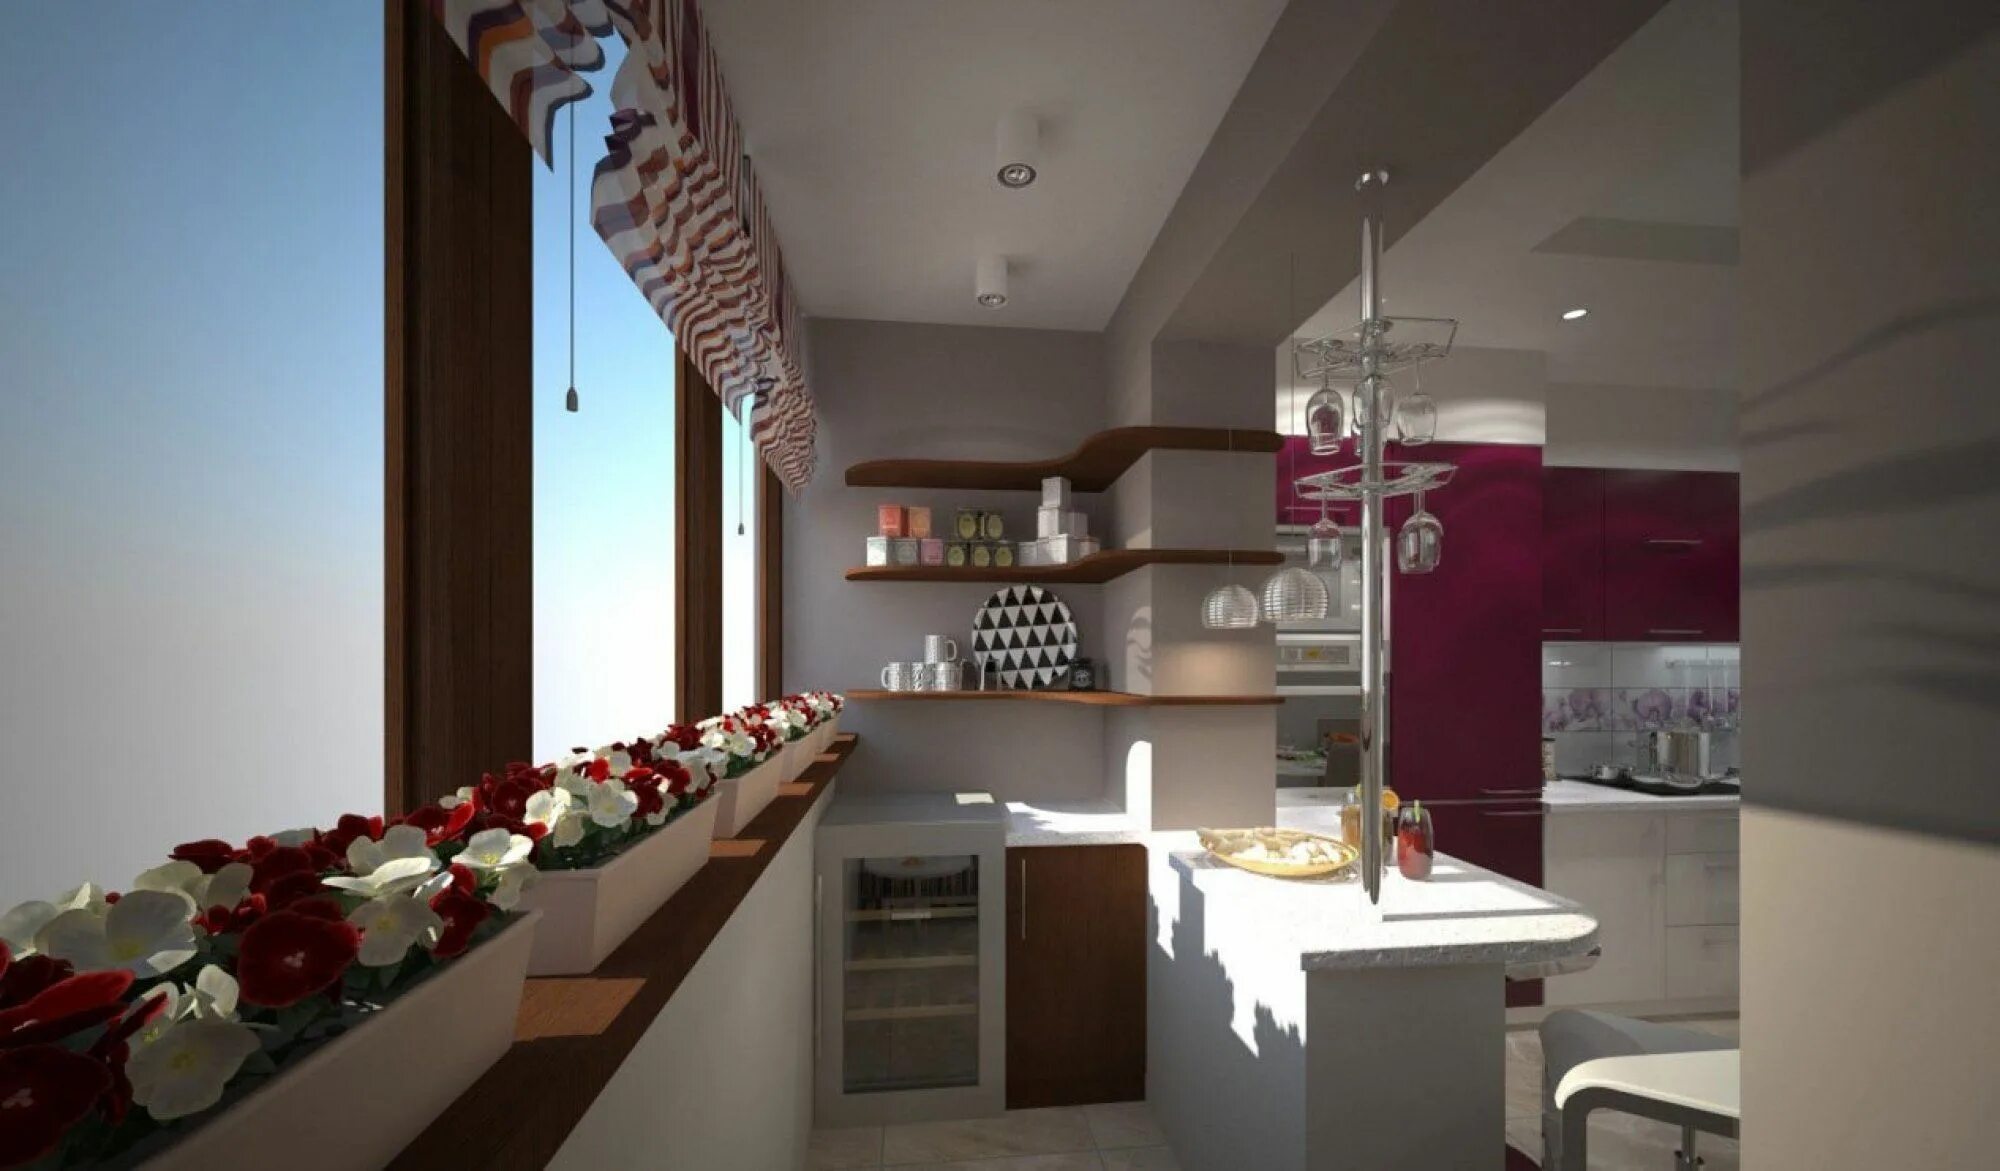 Дизайн балкона кухни фото. Кухня совмещенная с балконом. Кухня на лоджии. Кухня Объединенная с балконом. Проект кухни совмещенной с балконом.